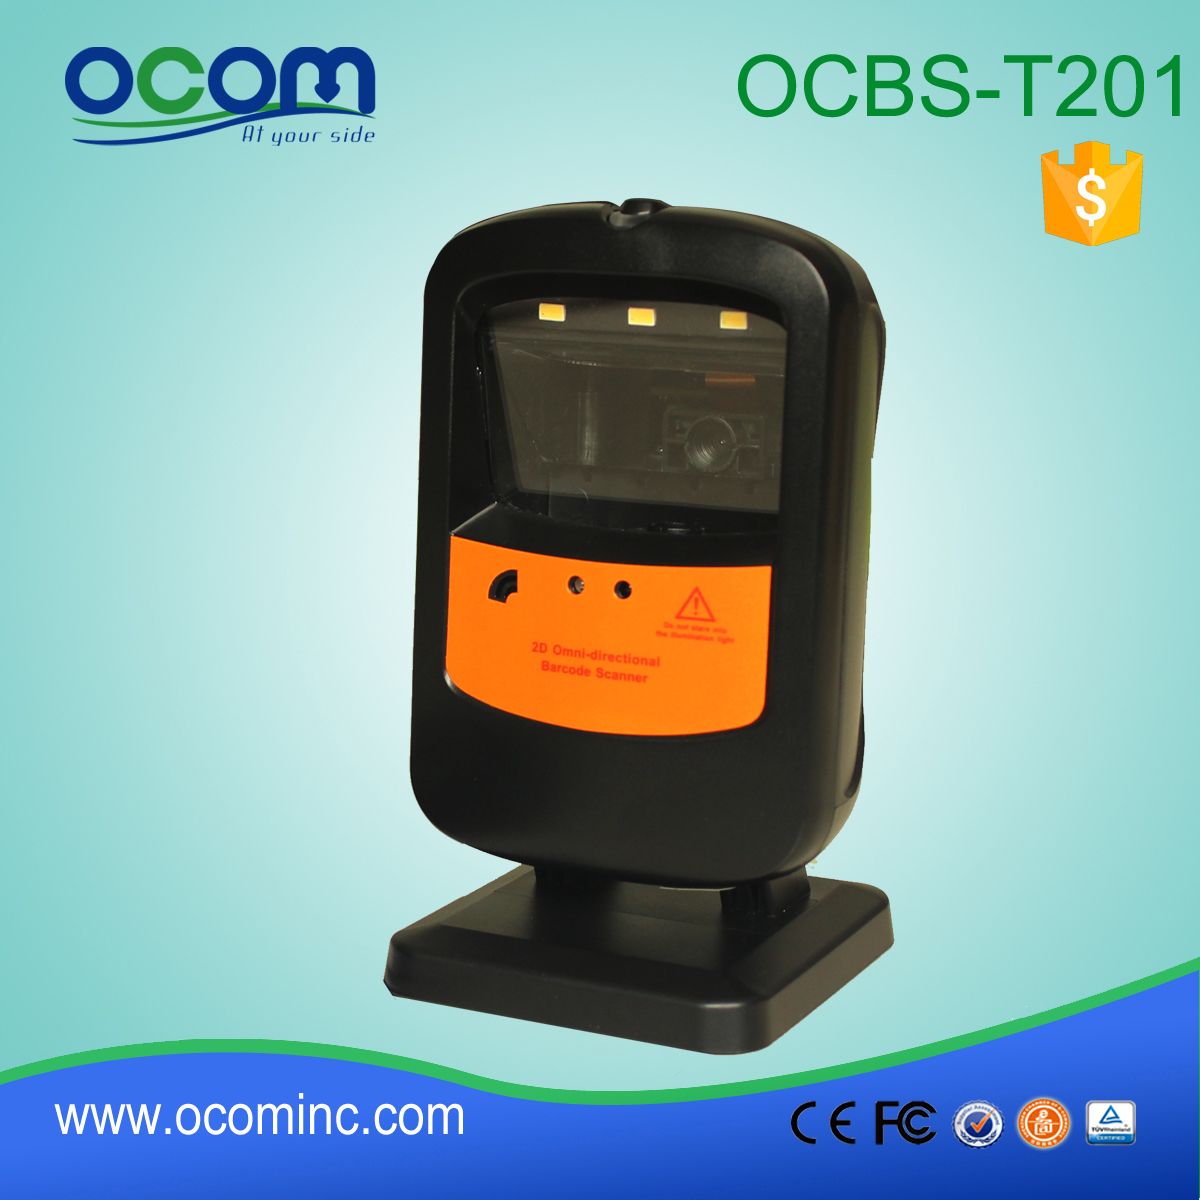 OCBS-T201: جديد السعر المعروض الباركود قارئ، قرص مع قارئ الباركود